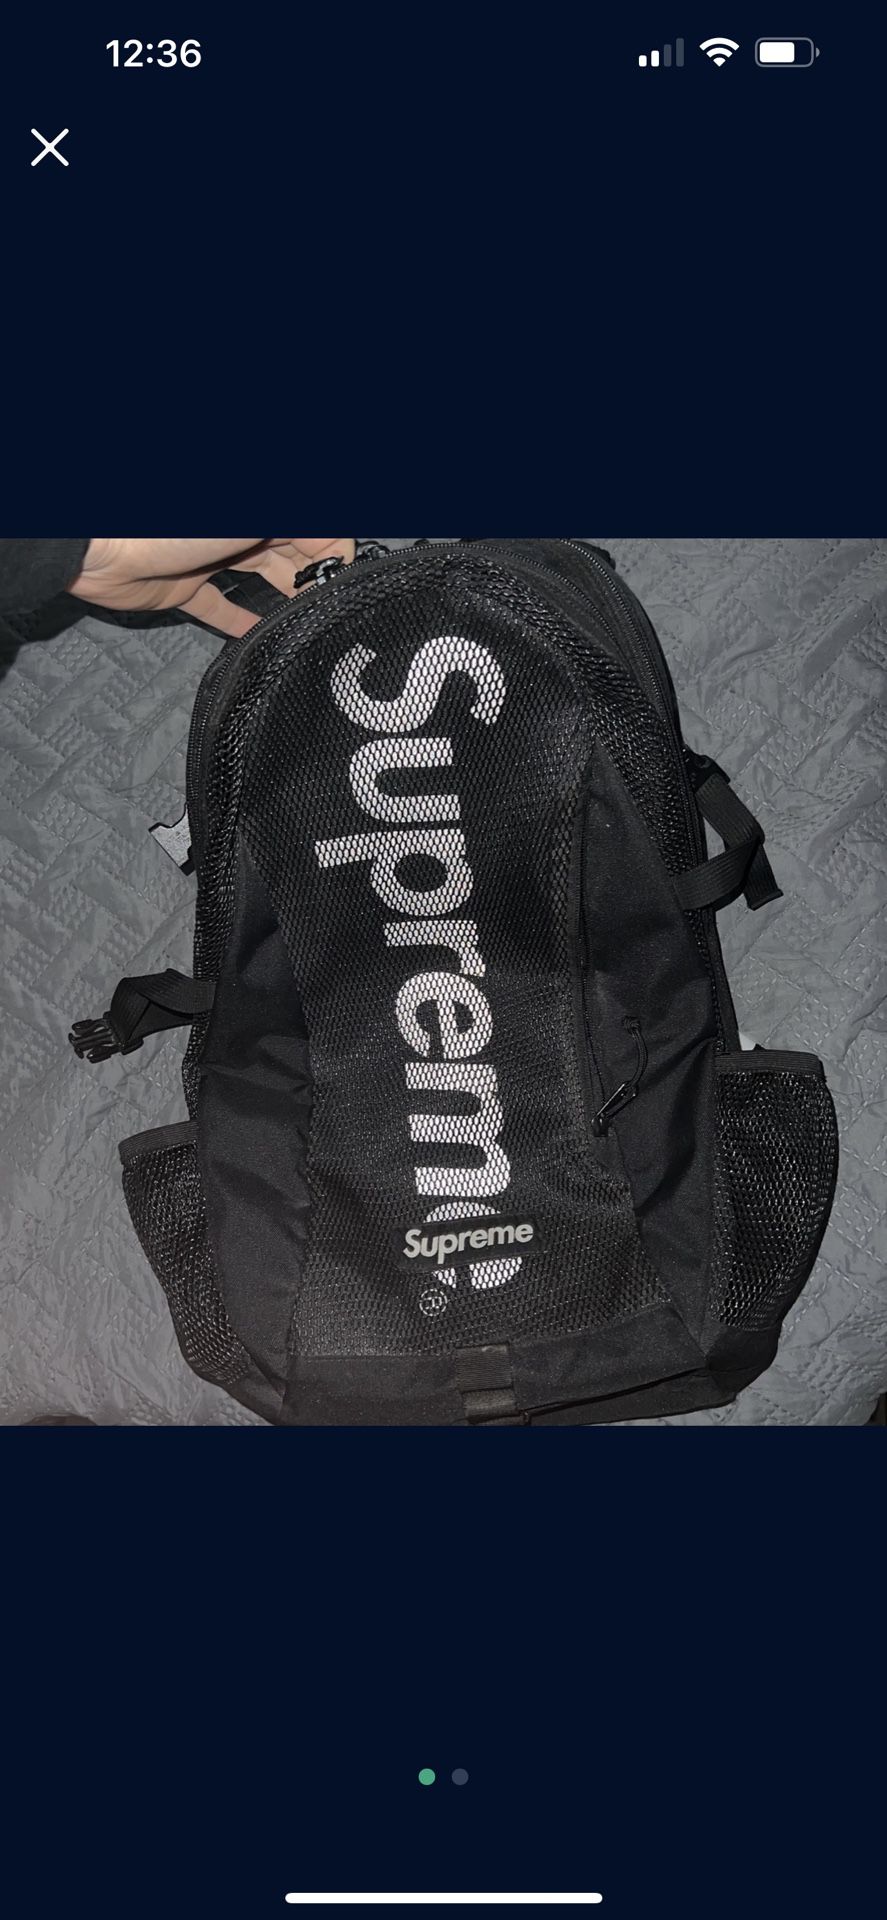 Ss 20 Supreme Bag 